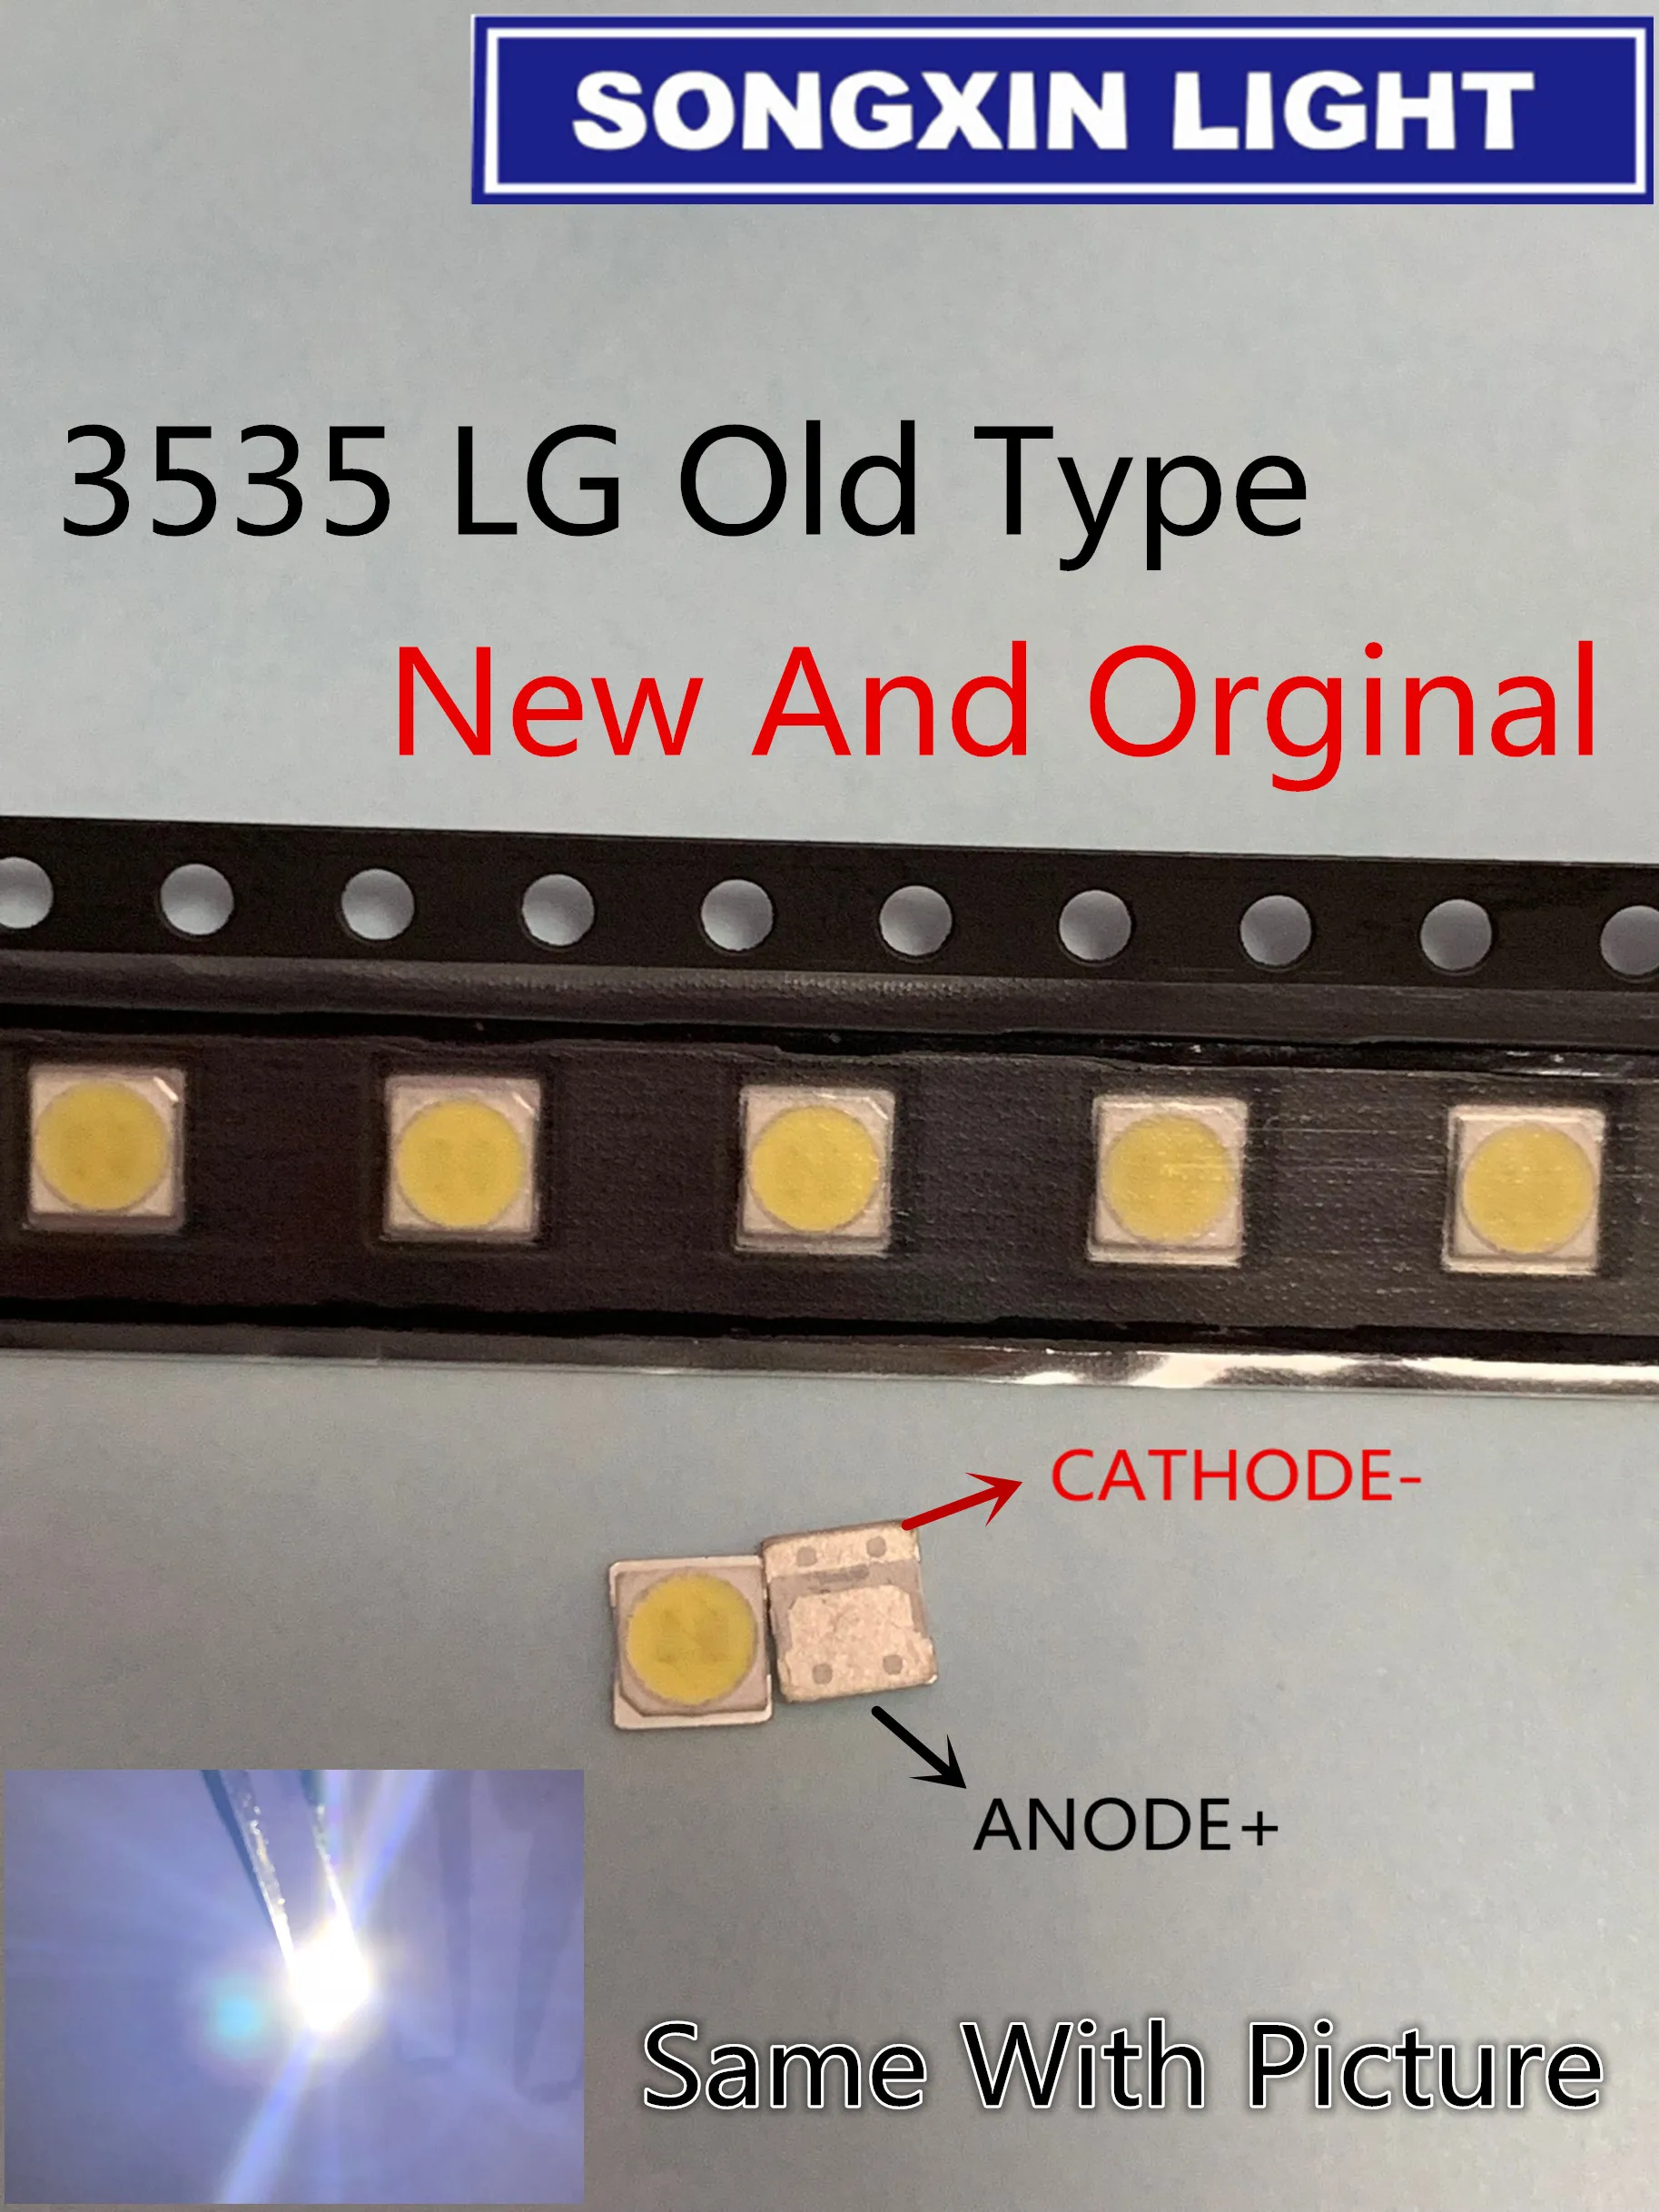 Для LG SMD светодиодный 100 шт./лот 3535 6 в холодный белый Чип-2 2 Вт для ТВ/ЖК Подсветка ТВ применение 3535 LG старый тип 3535 6 в светодиодный